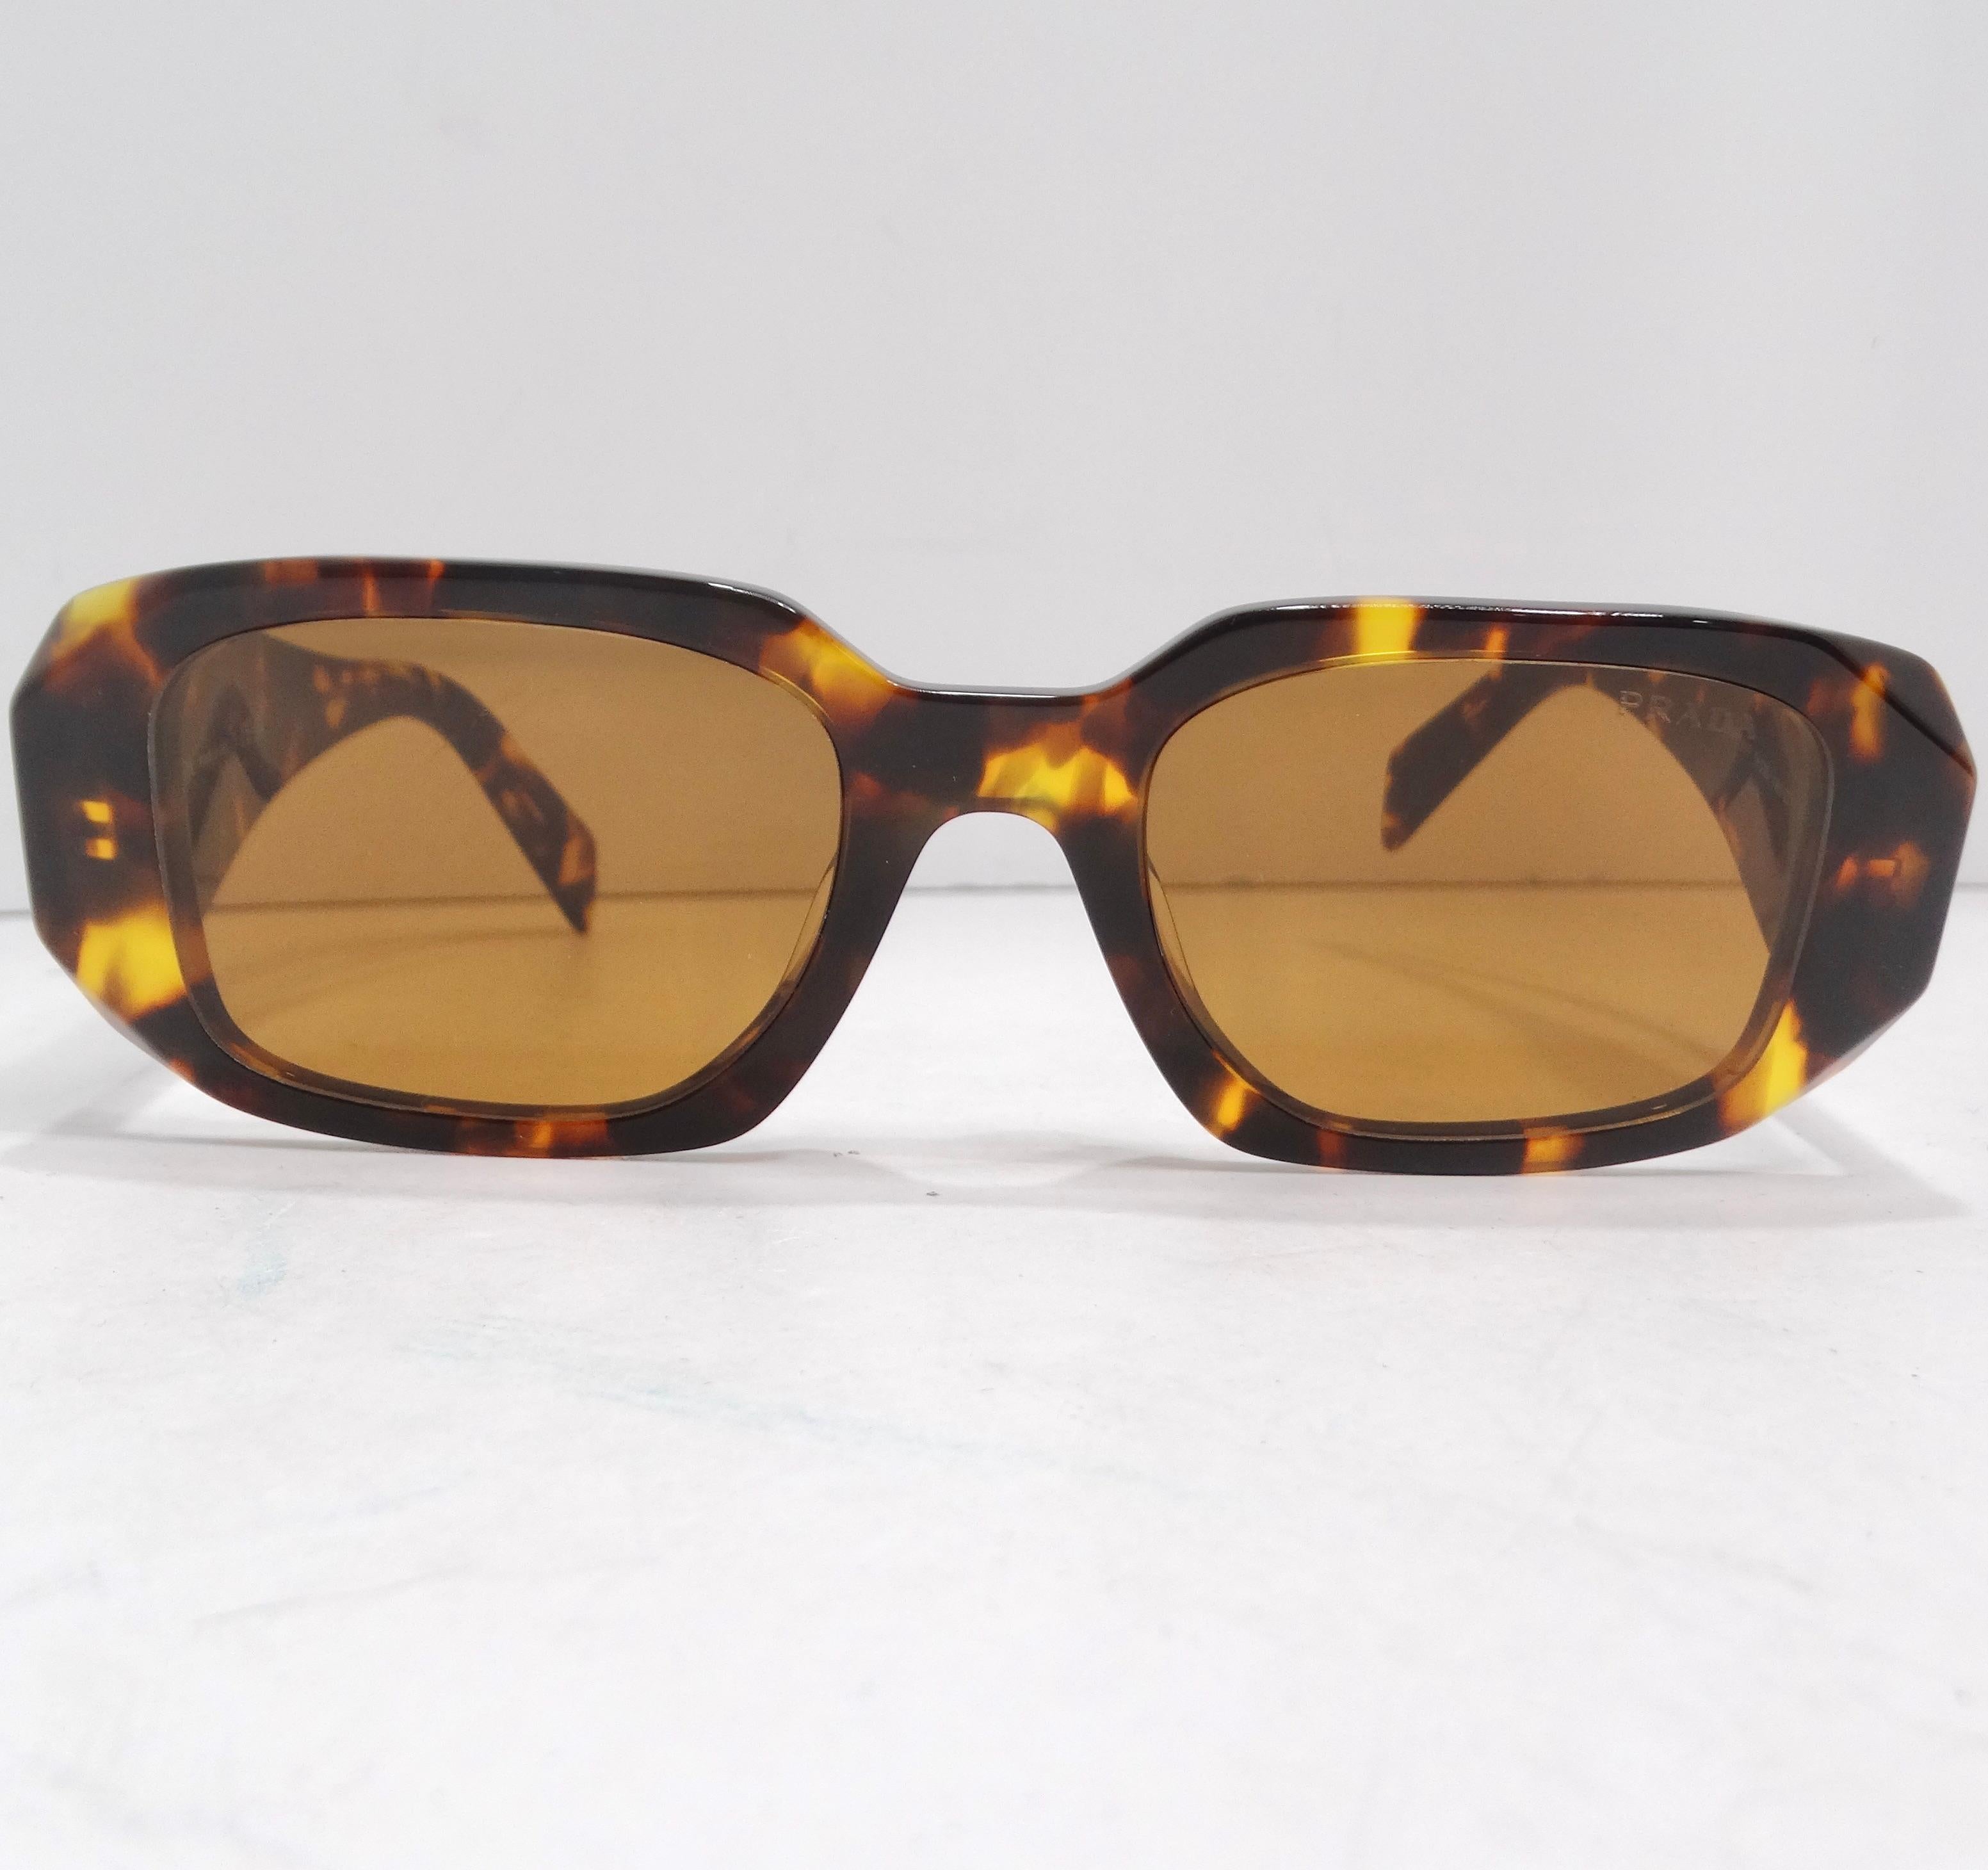 Ne manquez pas les lunettes de soleil Prada Eyewear à monture carrée en écaille de tortue - une fusion parfaite de sophistication, de polyvalence et de design emblématique. Ces lunettes de soleil à monture carrée de Prada ne sont pas seulement un